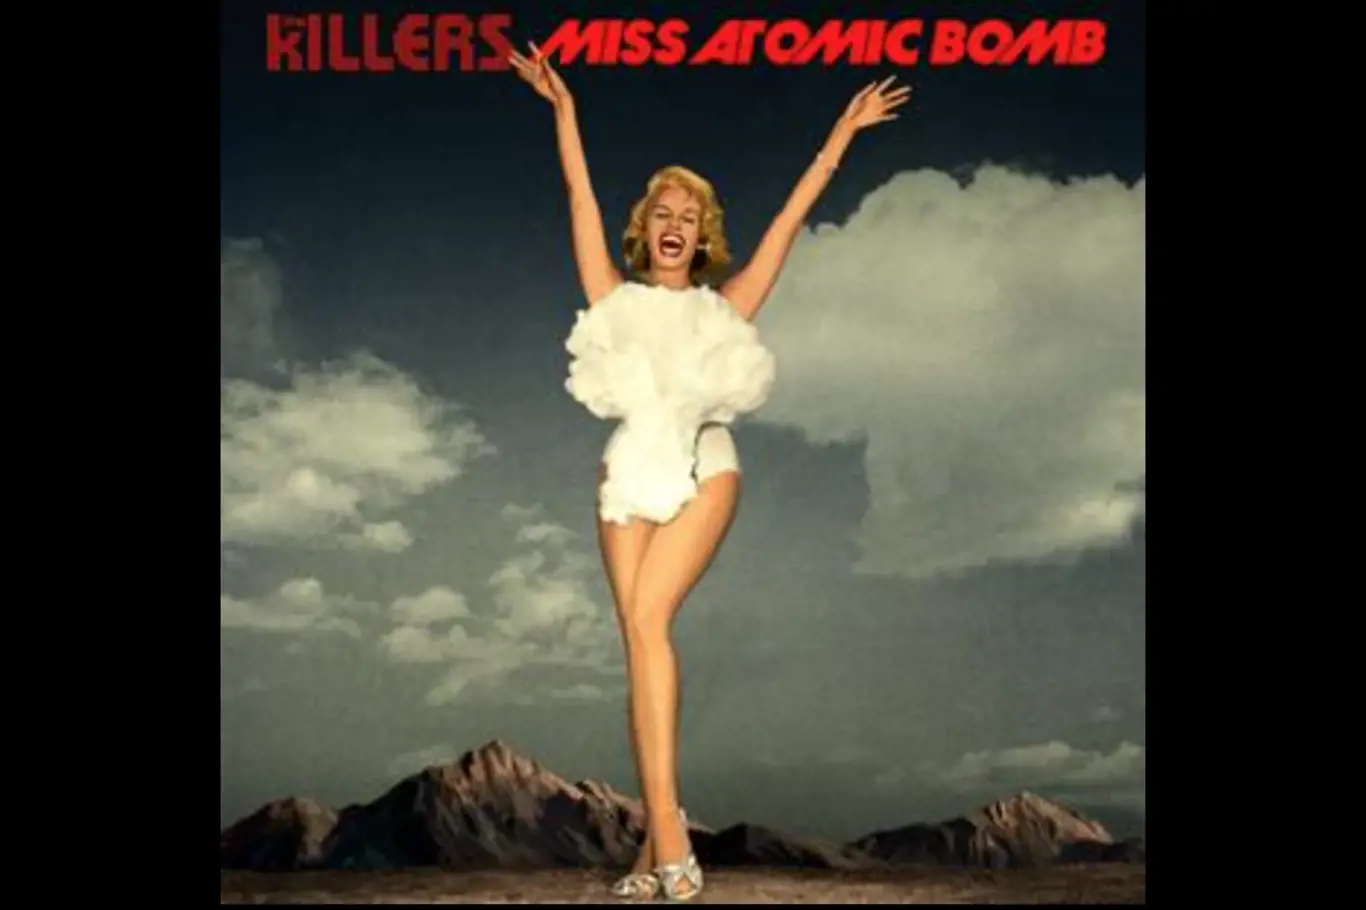 Plakát k soutěži Miss atomová bomba